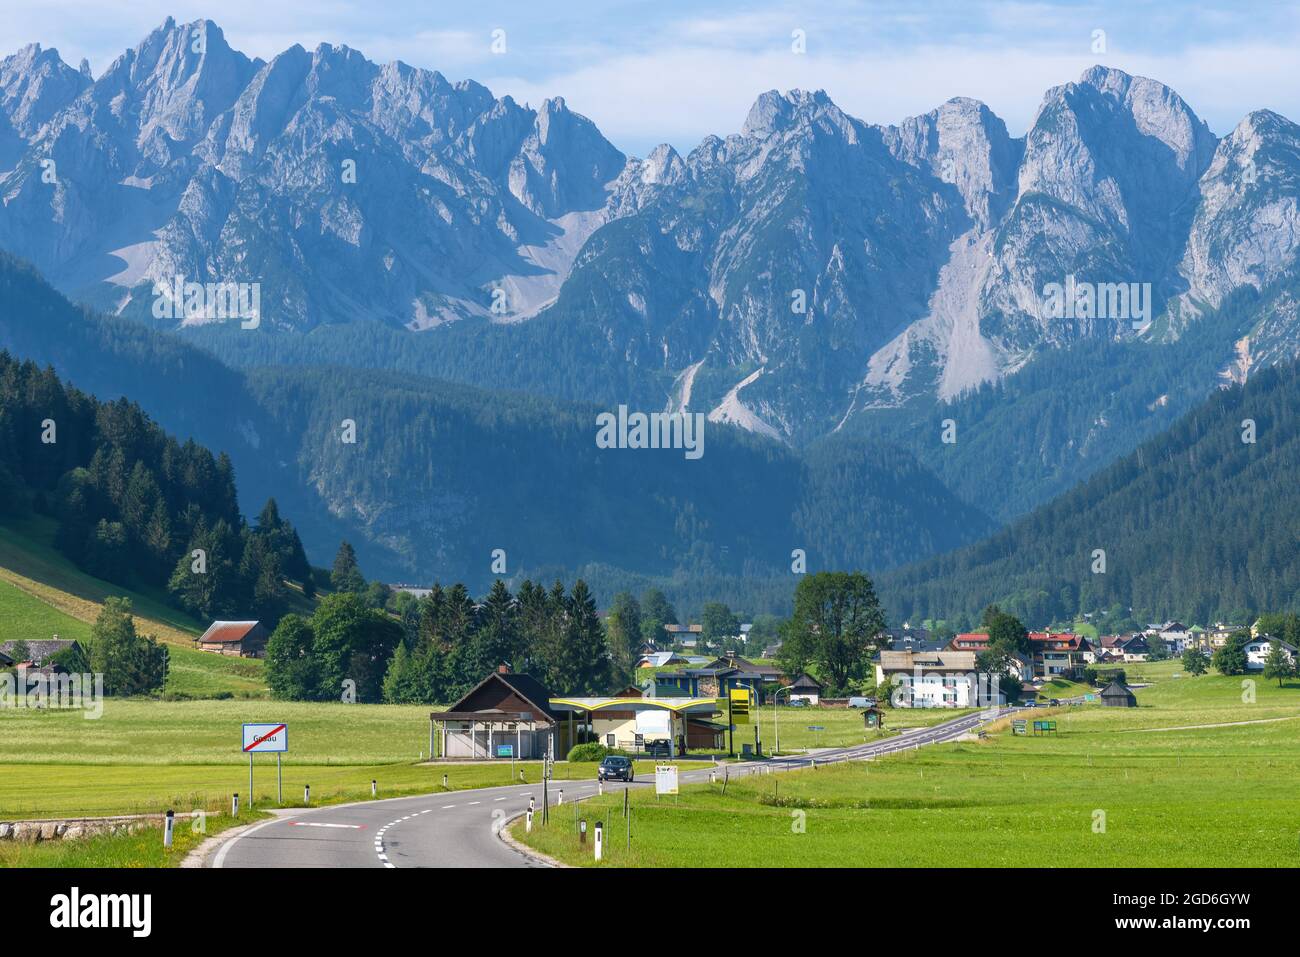 Gosau, ein schönes Reiseziel in Österreich mit einem See und Bergen im Salzkammergut. Stockfoto